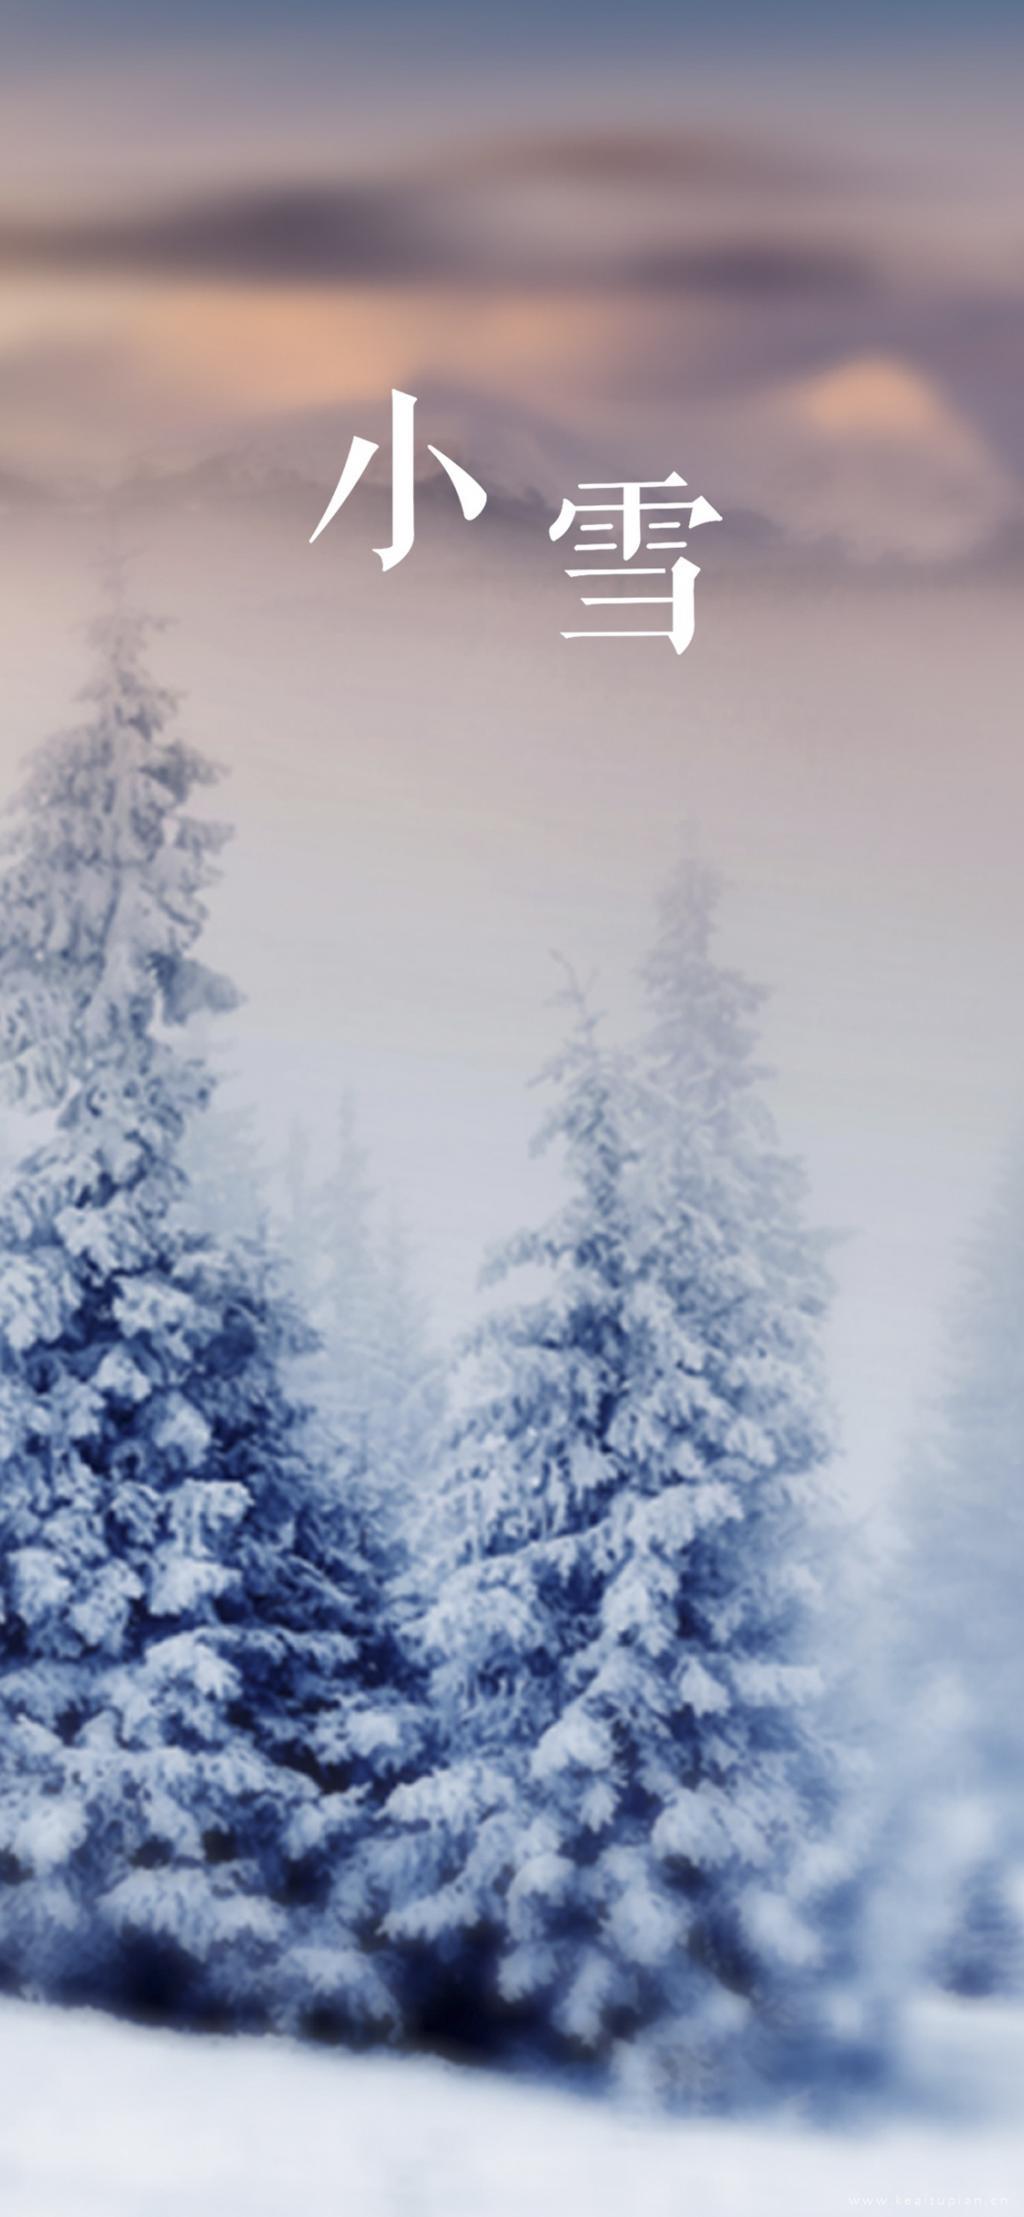 小雪节气风景高清带字手机壁纸图片